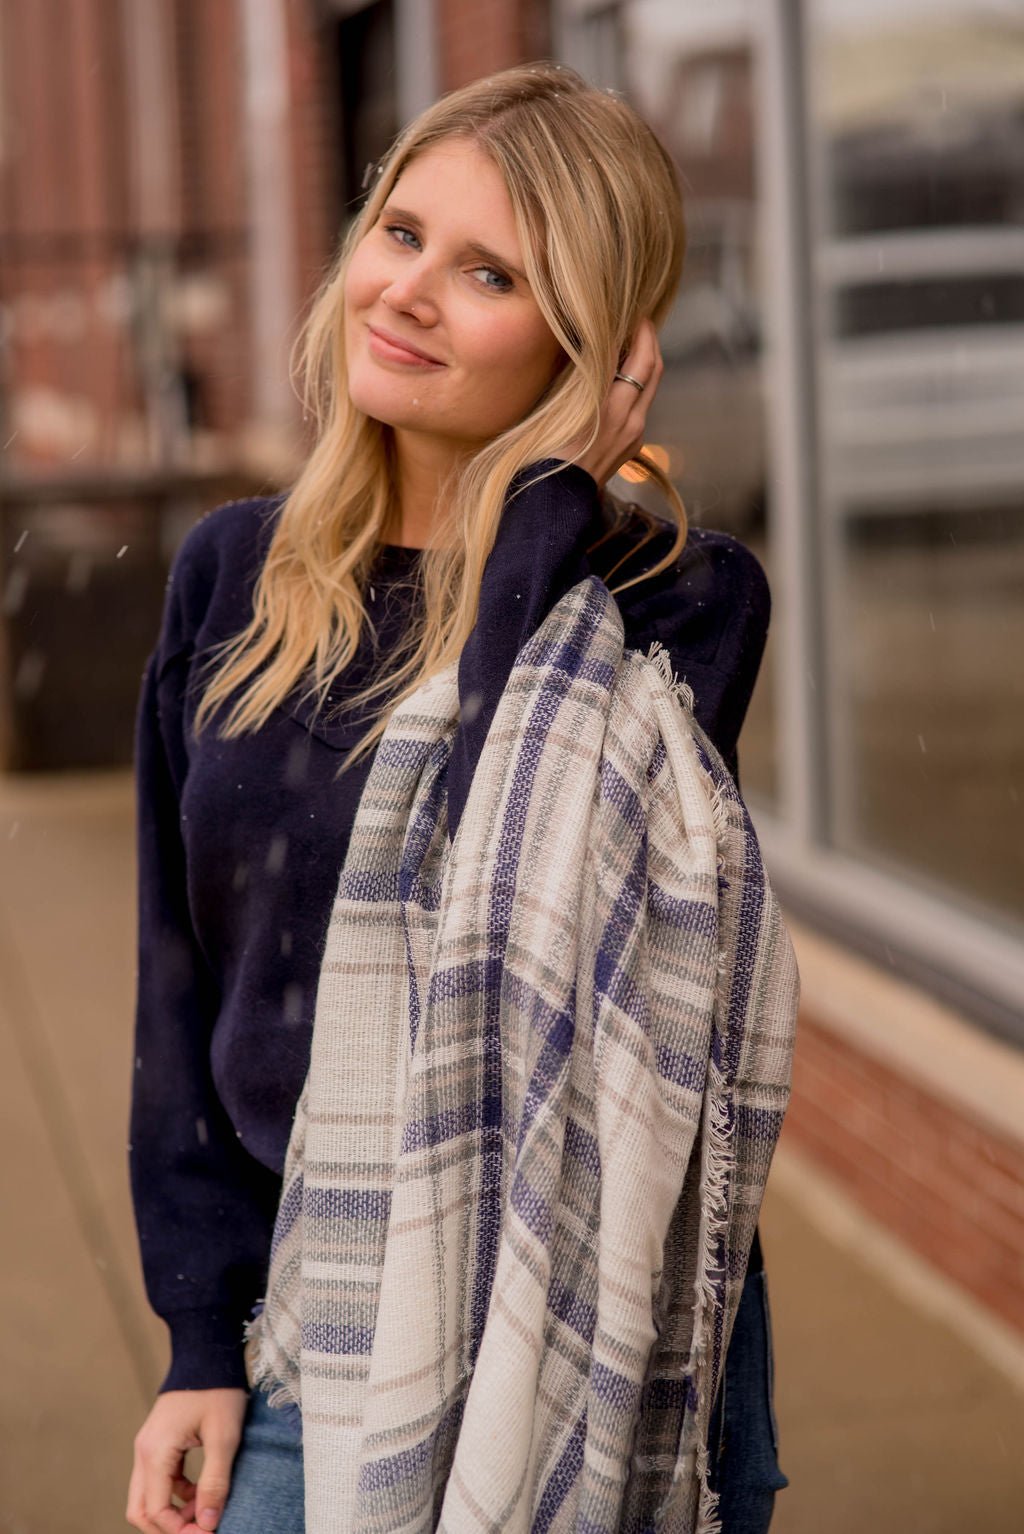 Kate Spade New York Plaid Blanket Scarf + Mid-Week Required